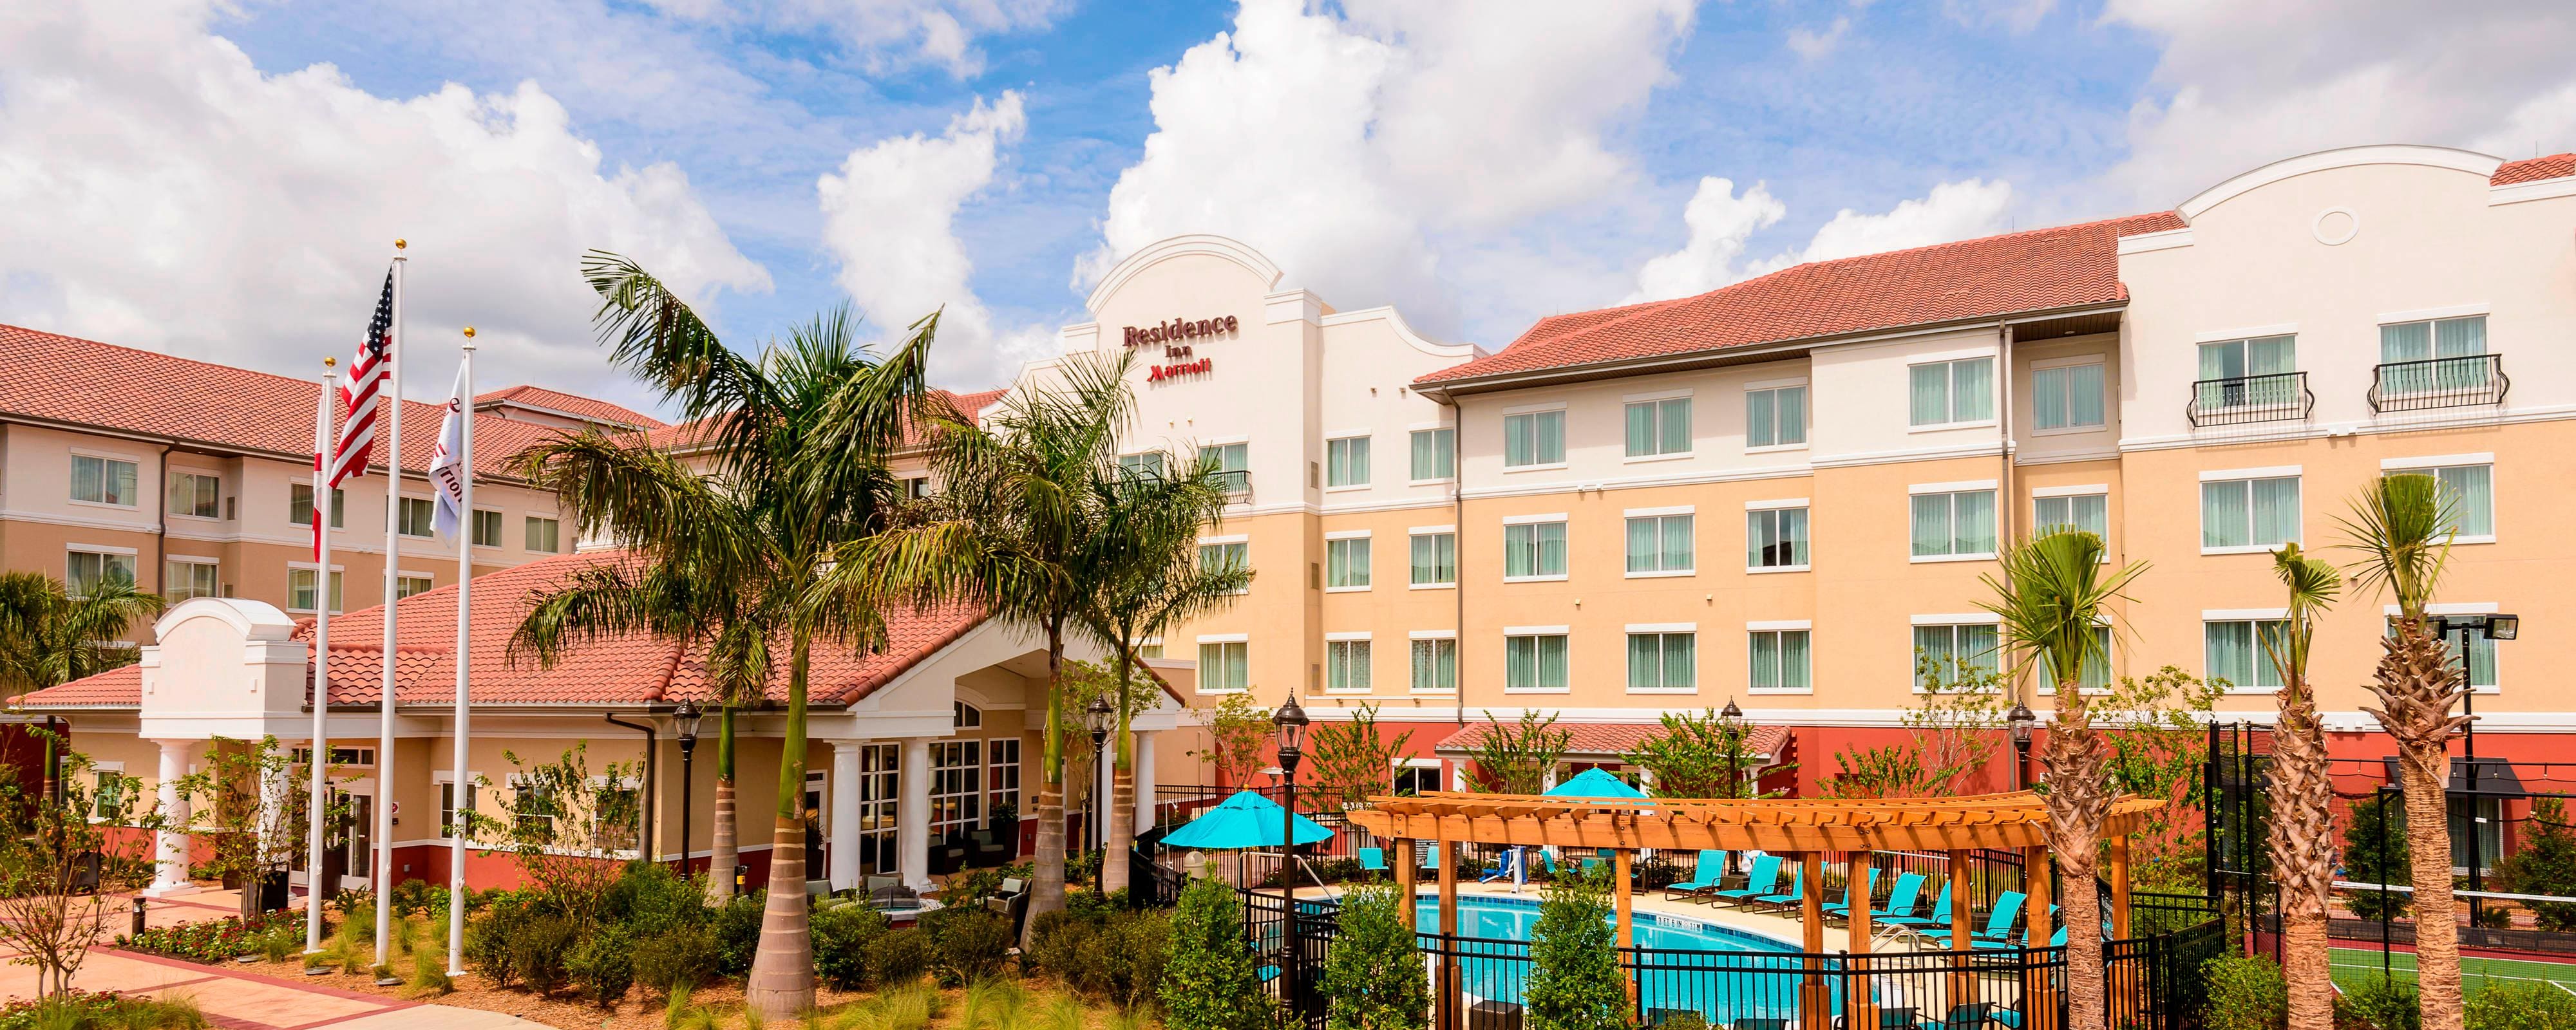 Extended Stay Fort Myers Hotel Residence Inn